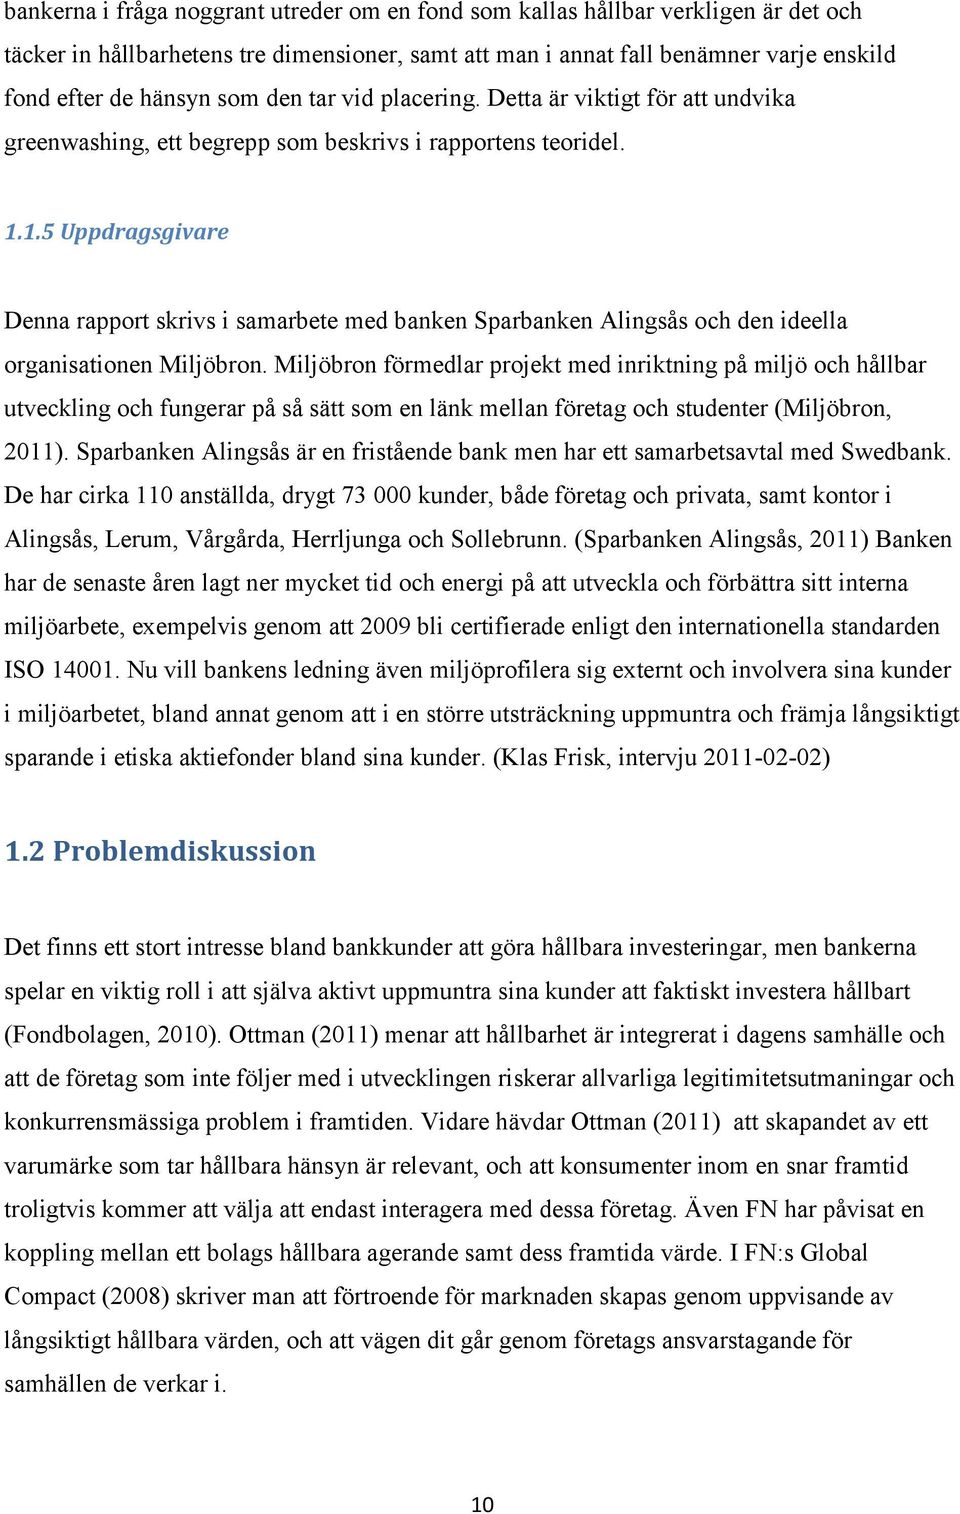 1.5 Uppdragsgivare Denna rapport skrivs i samarbete med banken Sparbanken Alingsås och den ideella organisationen Miljöbron.